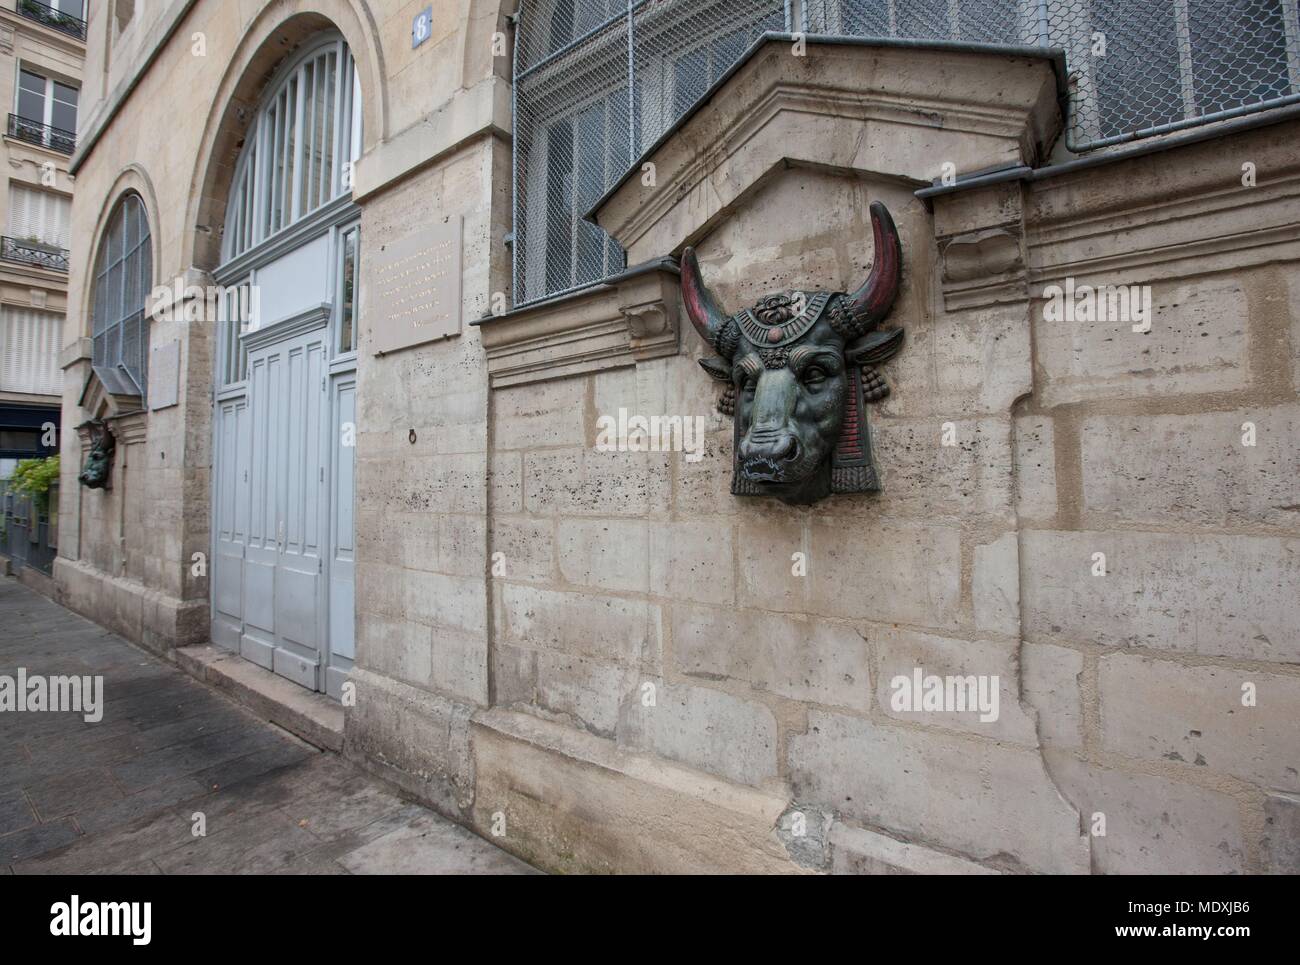 Paris, 4th arrondissement, le Marais, rue des Hospitalieres Saint Gervais, bull heads, nursery school, Stock Photo